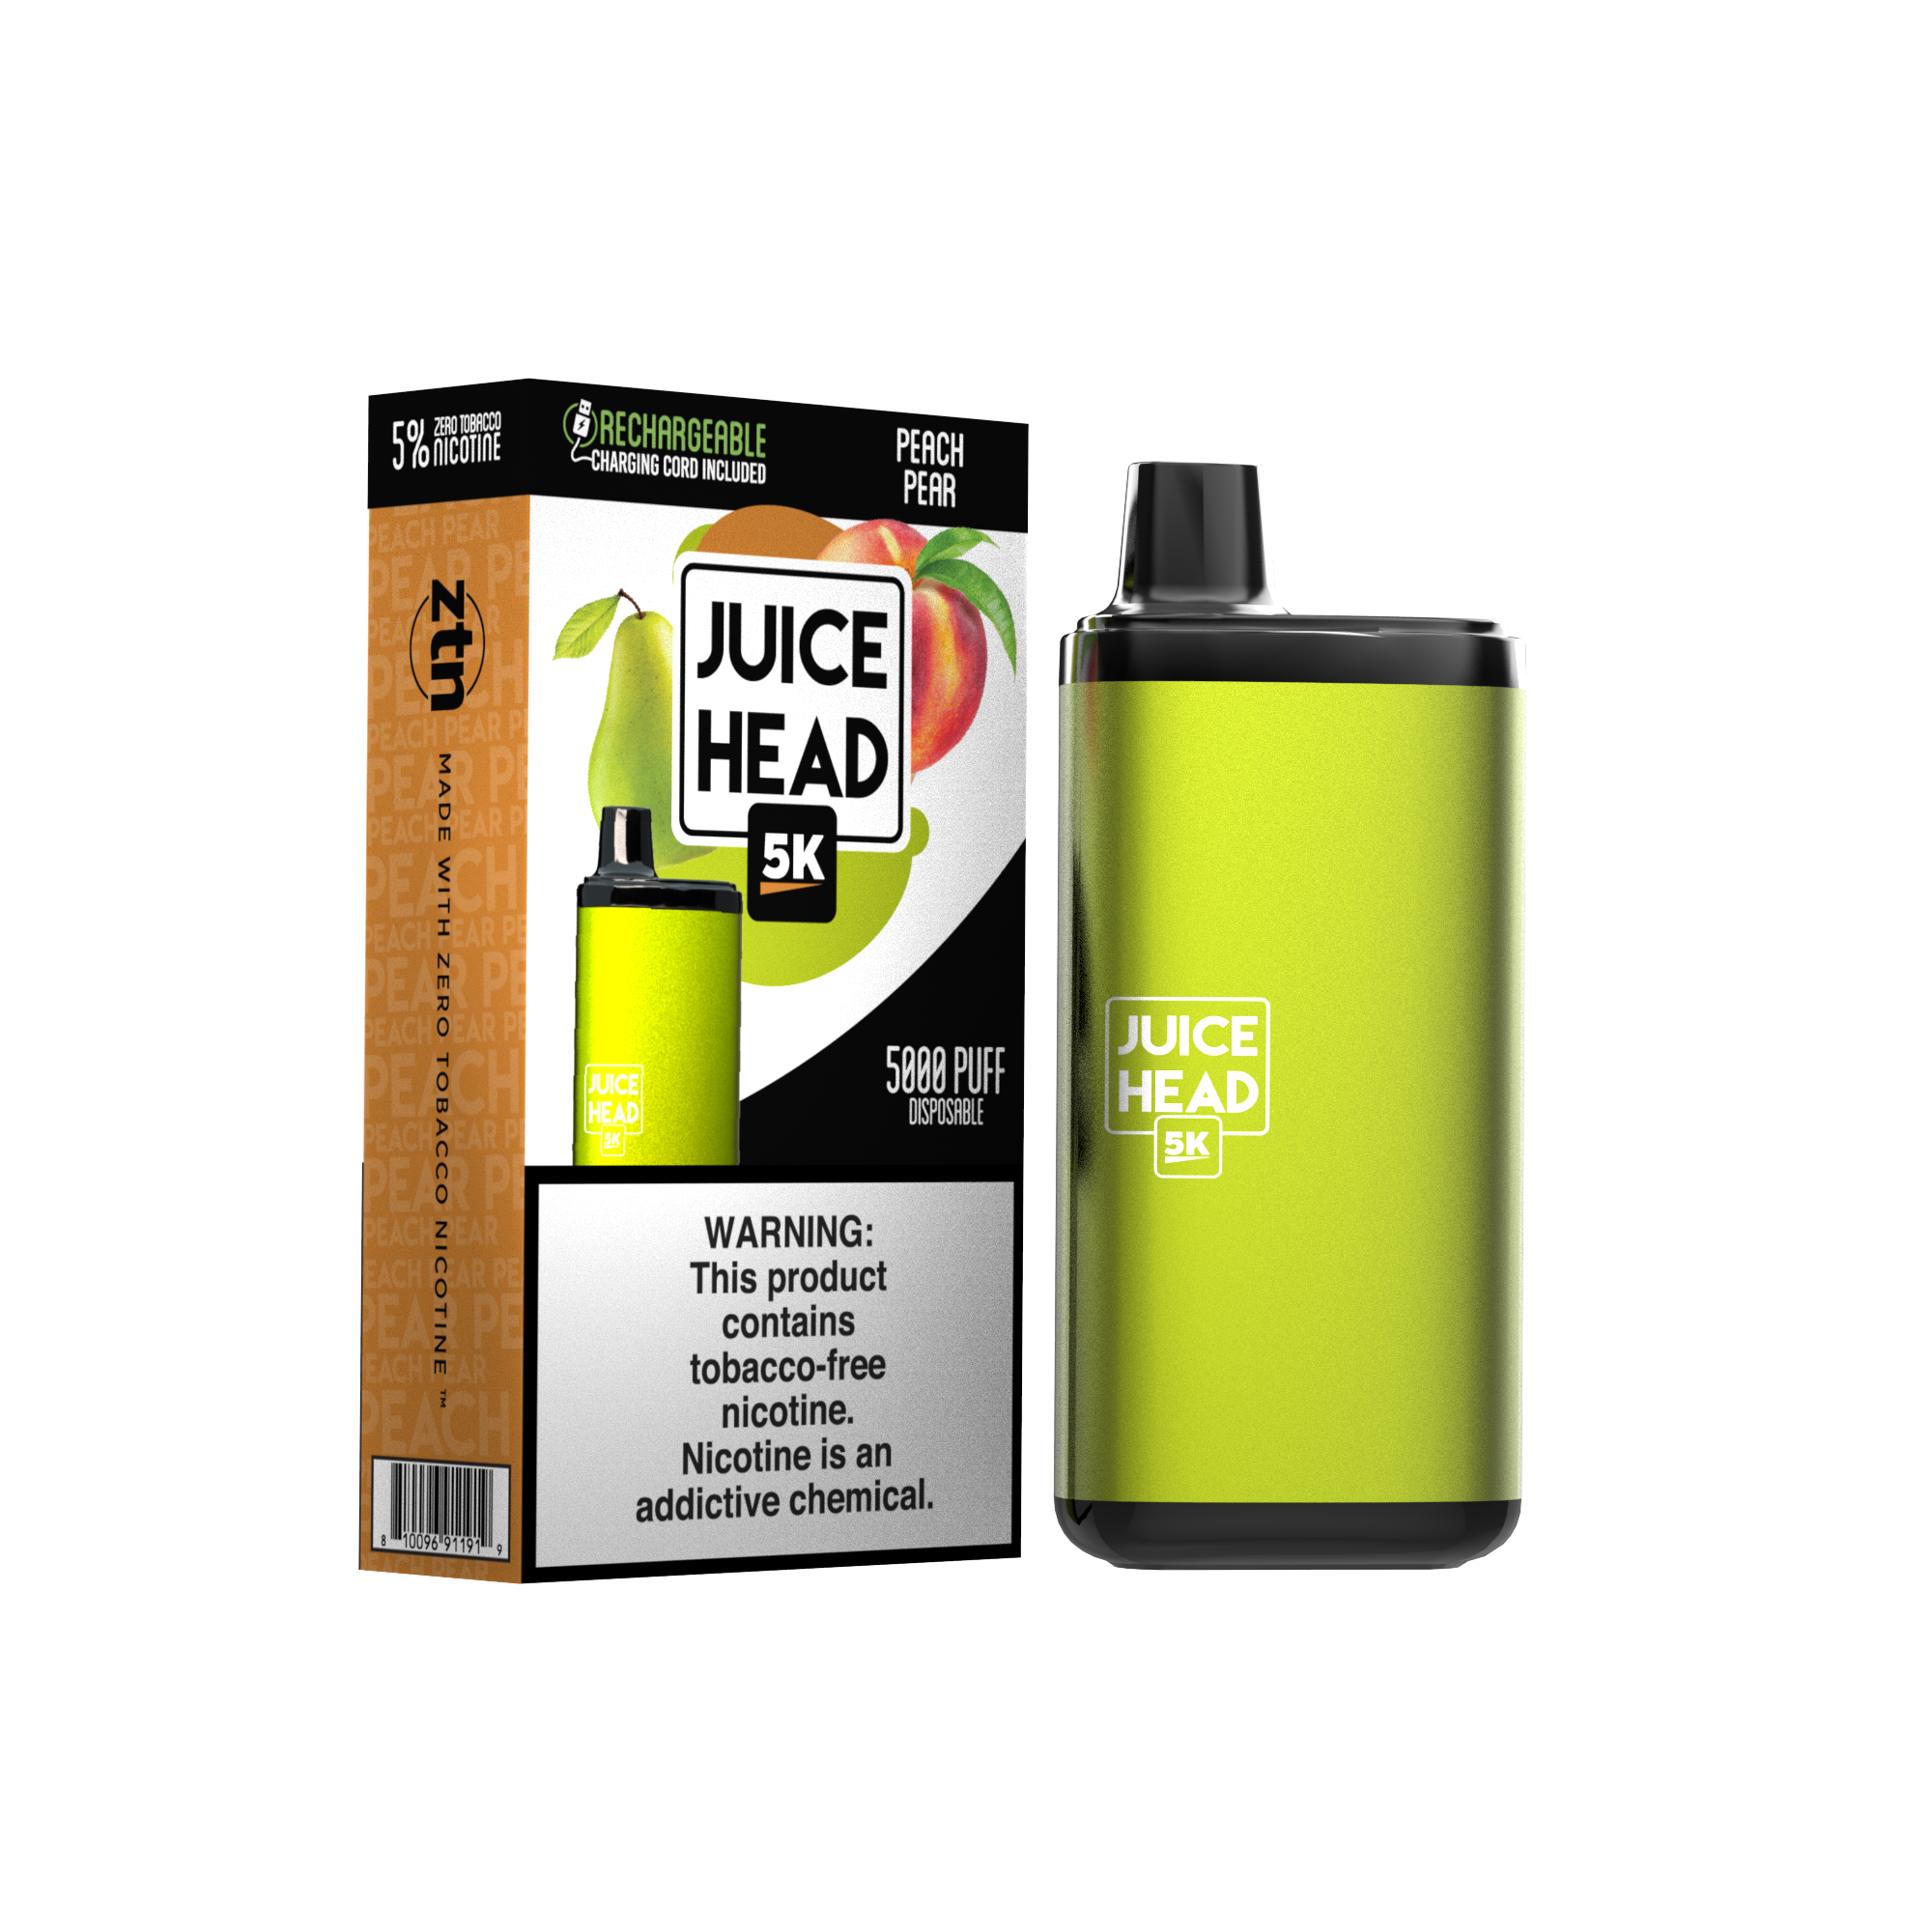 Juice Head 5K - PEACH PEAR - E-Juice